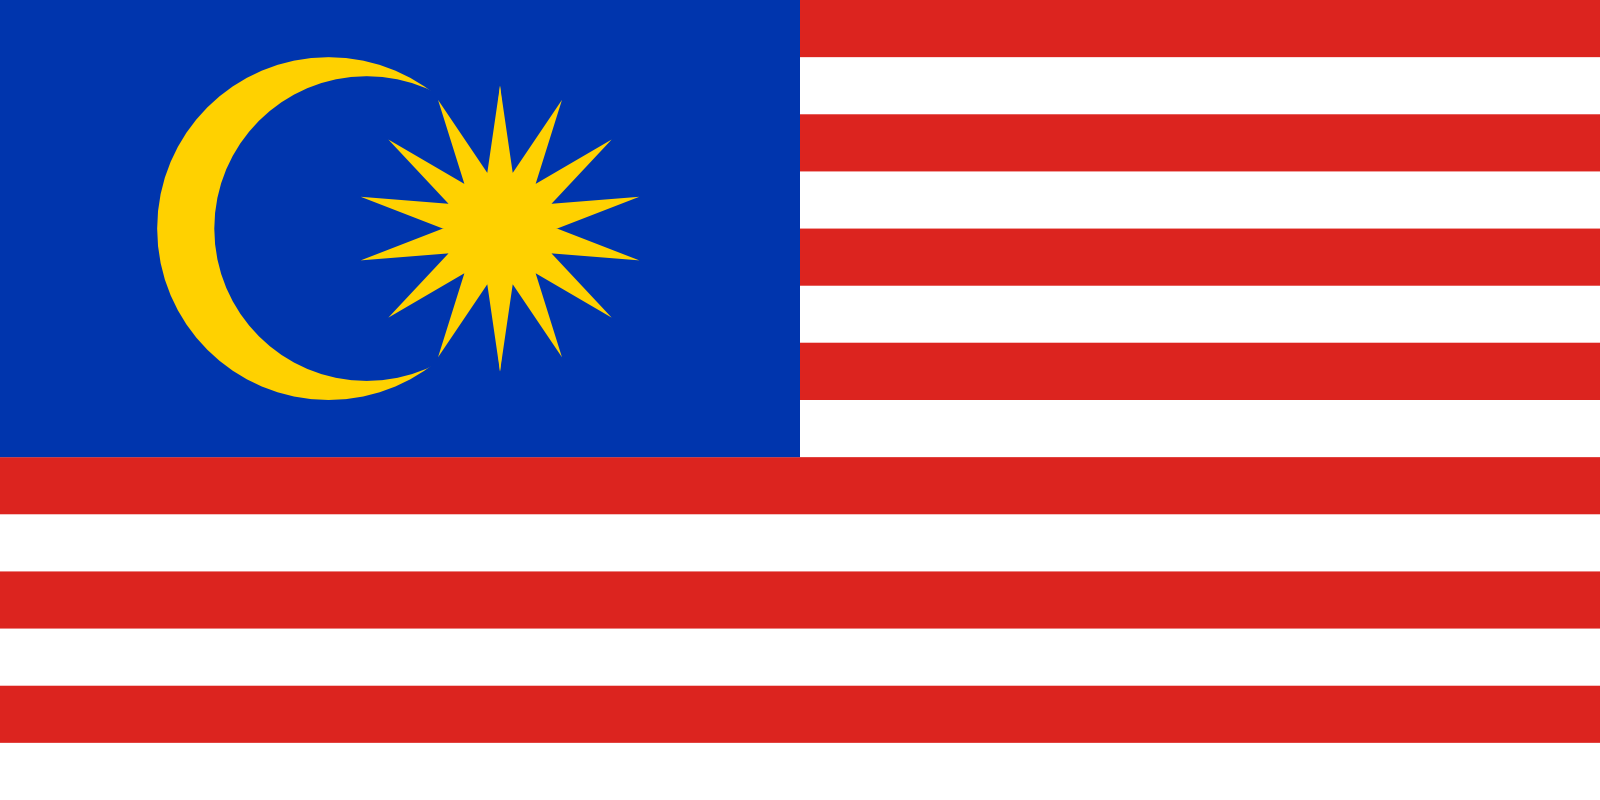 Bild der Staatsflagge Malaysia - mit einer Auflösung von 1600x800 - Ostasien